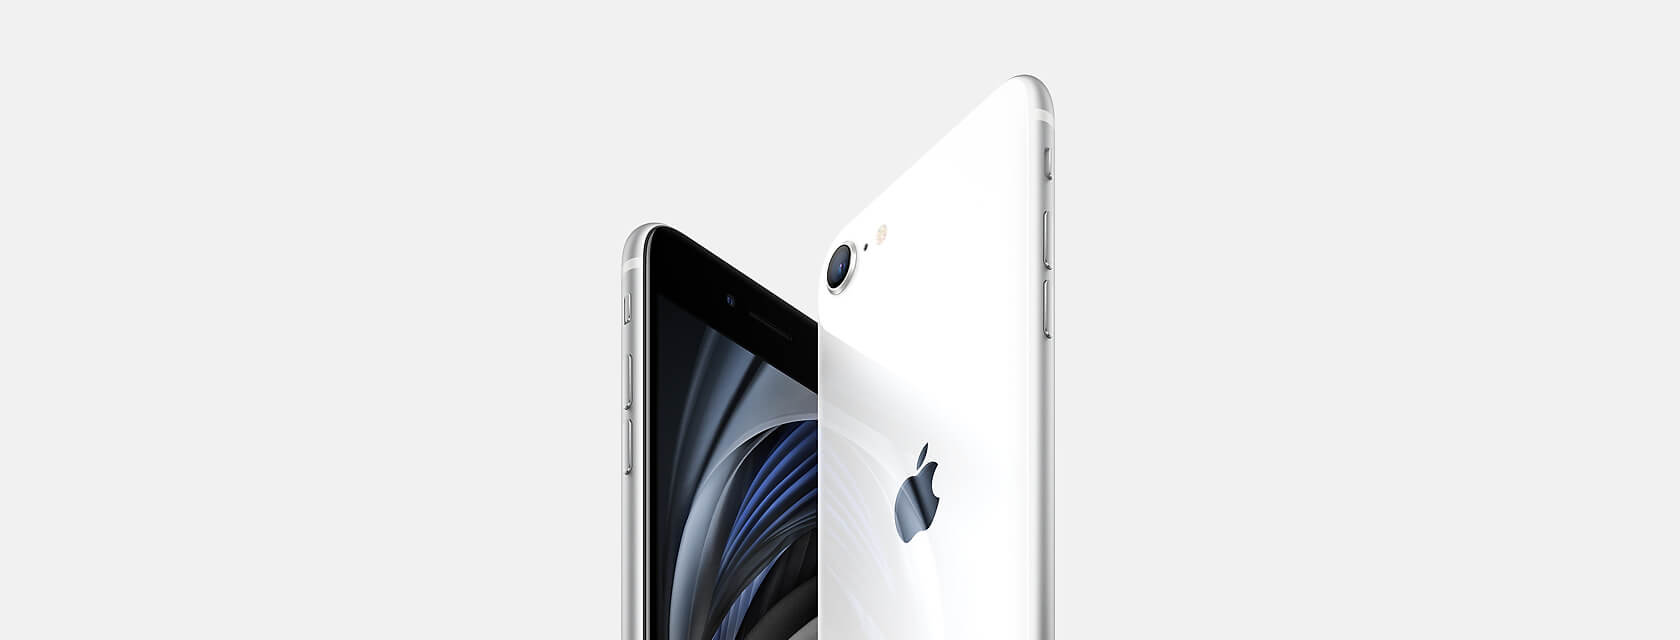 rijstwijn Geestig beginsel iPhone SE 2020 2de generatie - MacKopen.be